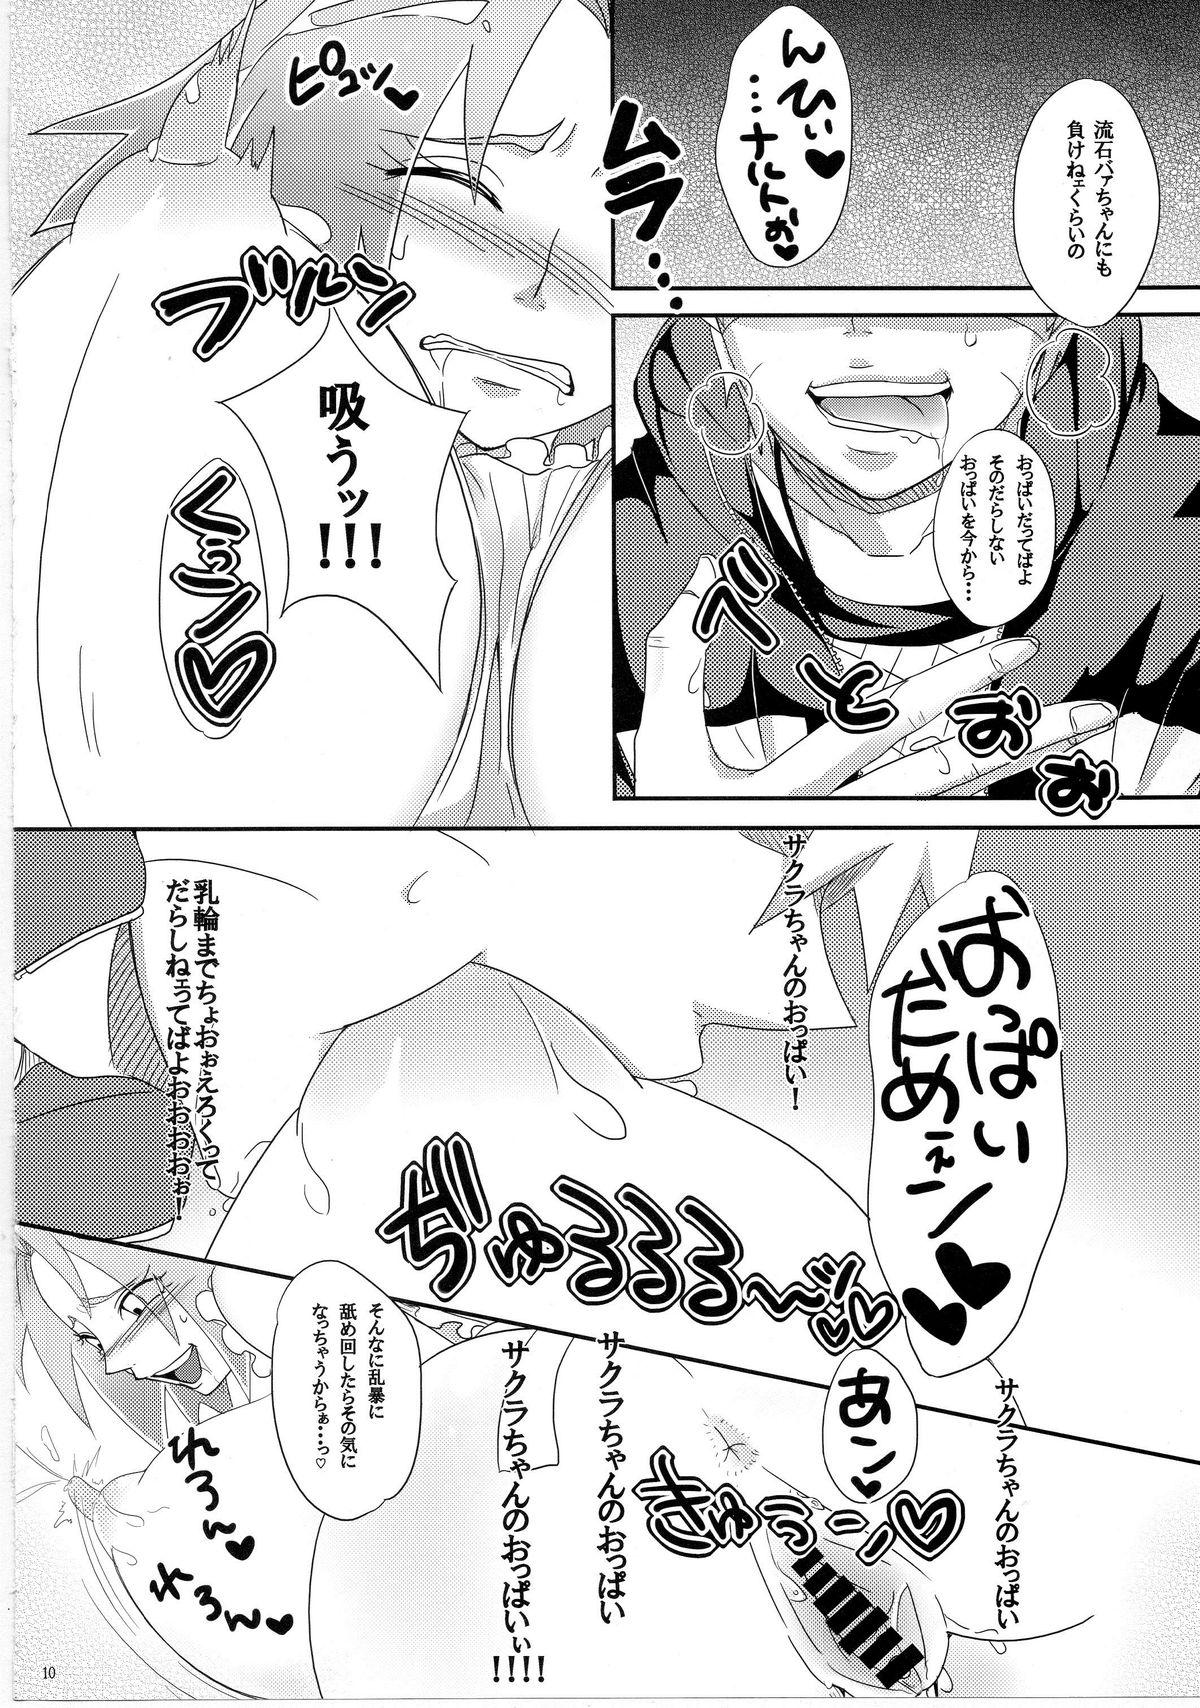 Casal Sato Ichiban no! - Naruto Tease - Page 9